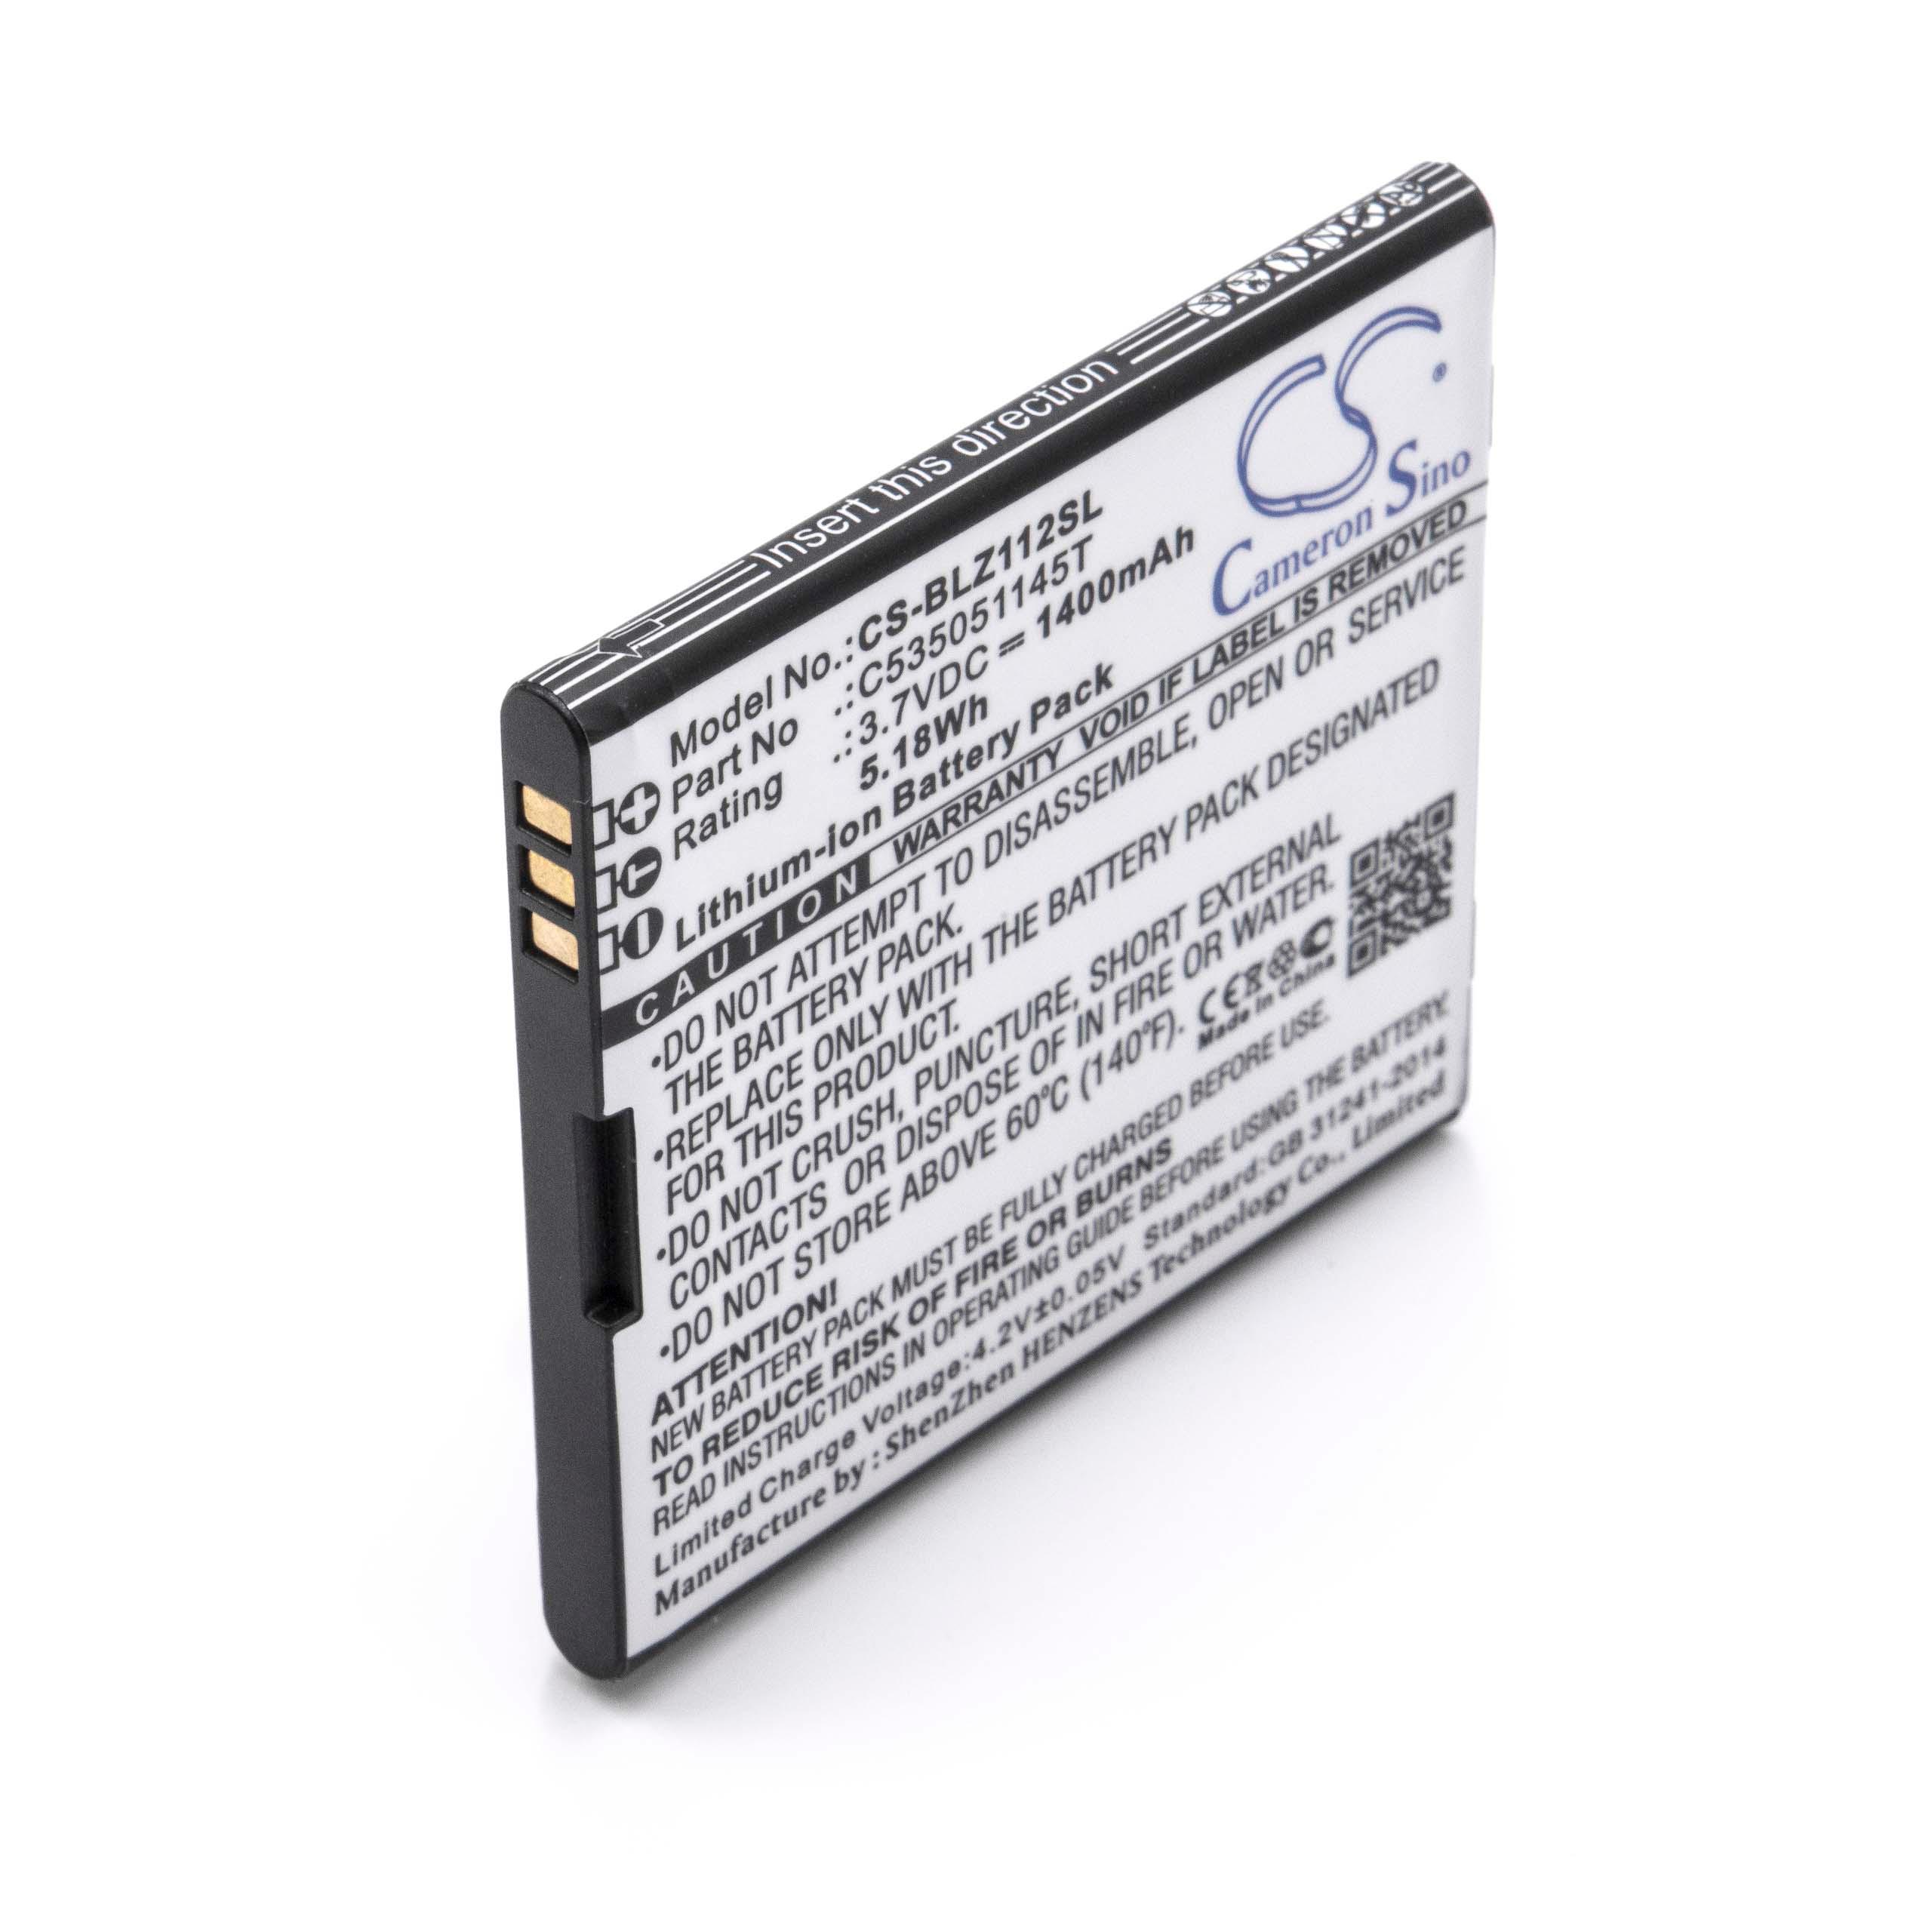 Batterie remplace Blu C535051145T pour téléphone portable - 1400mAh, 3,7V, Li-ion